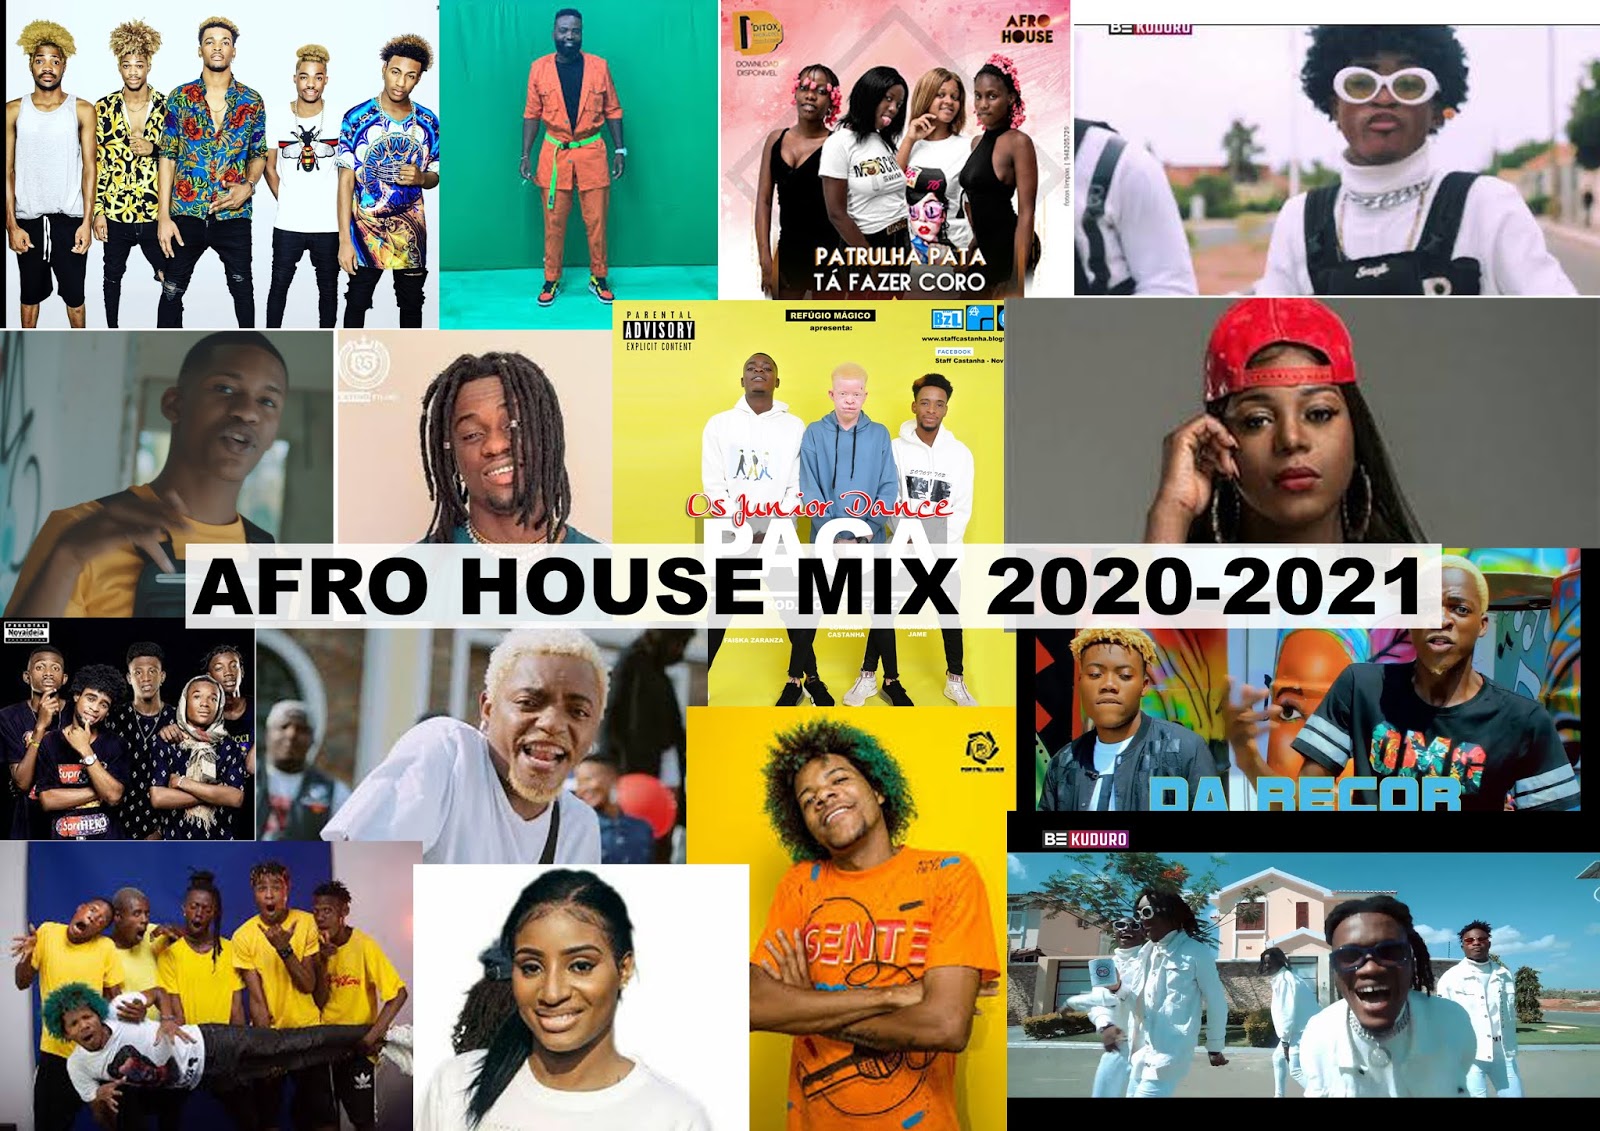 AFRO HOUSE MIX 2020-2021 STAFF CASTANHA - STAFF CASTANHA ...